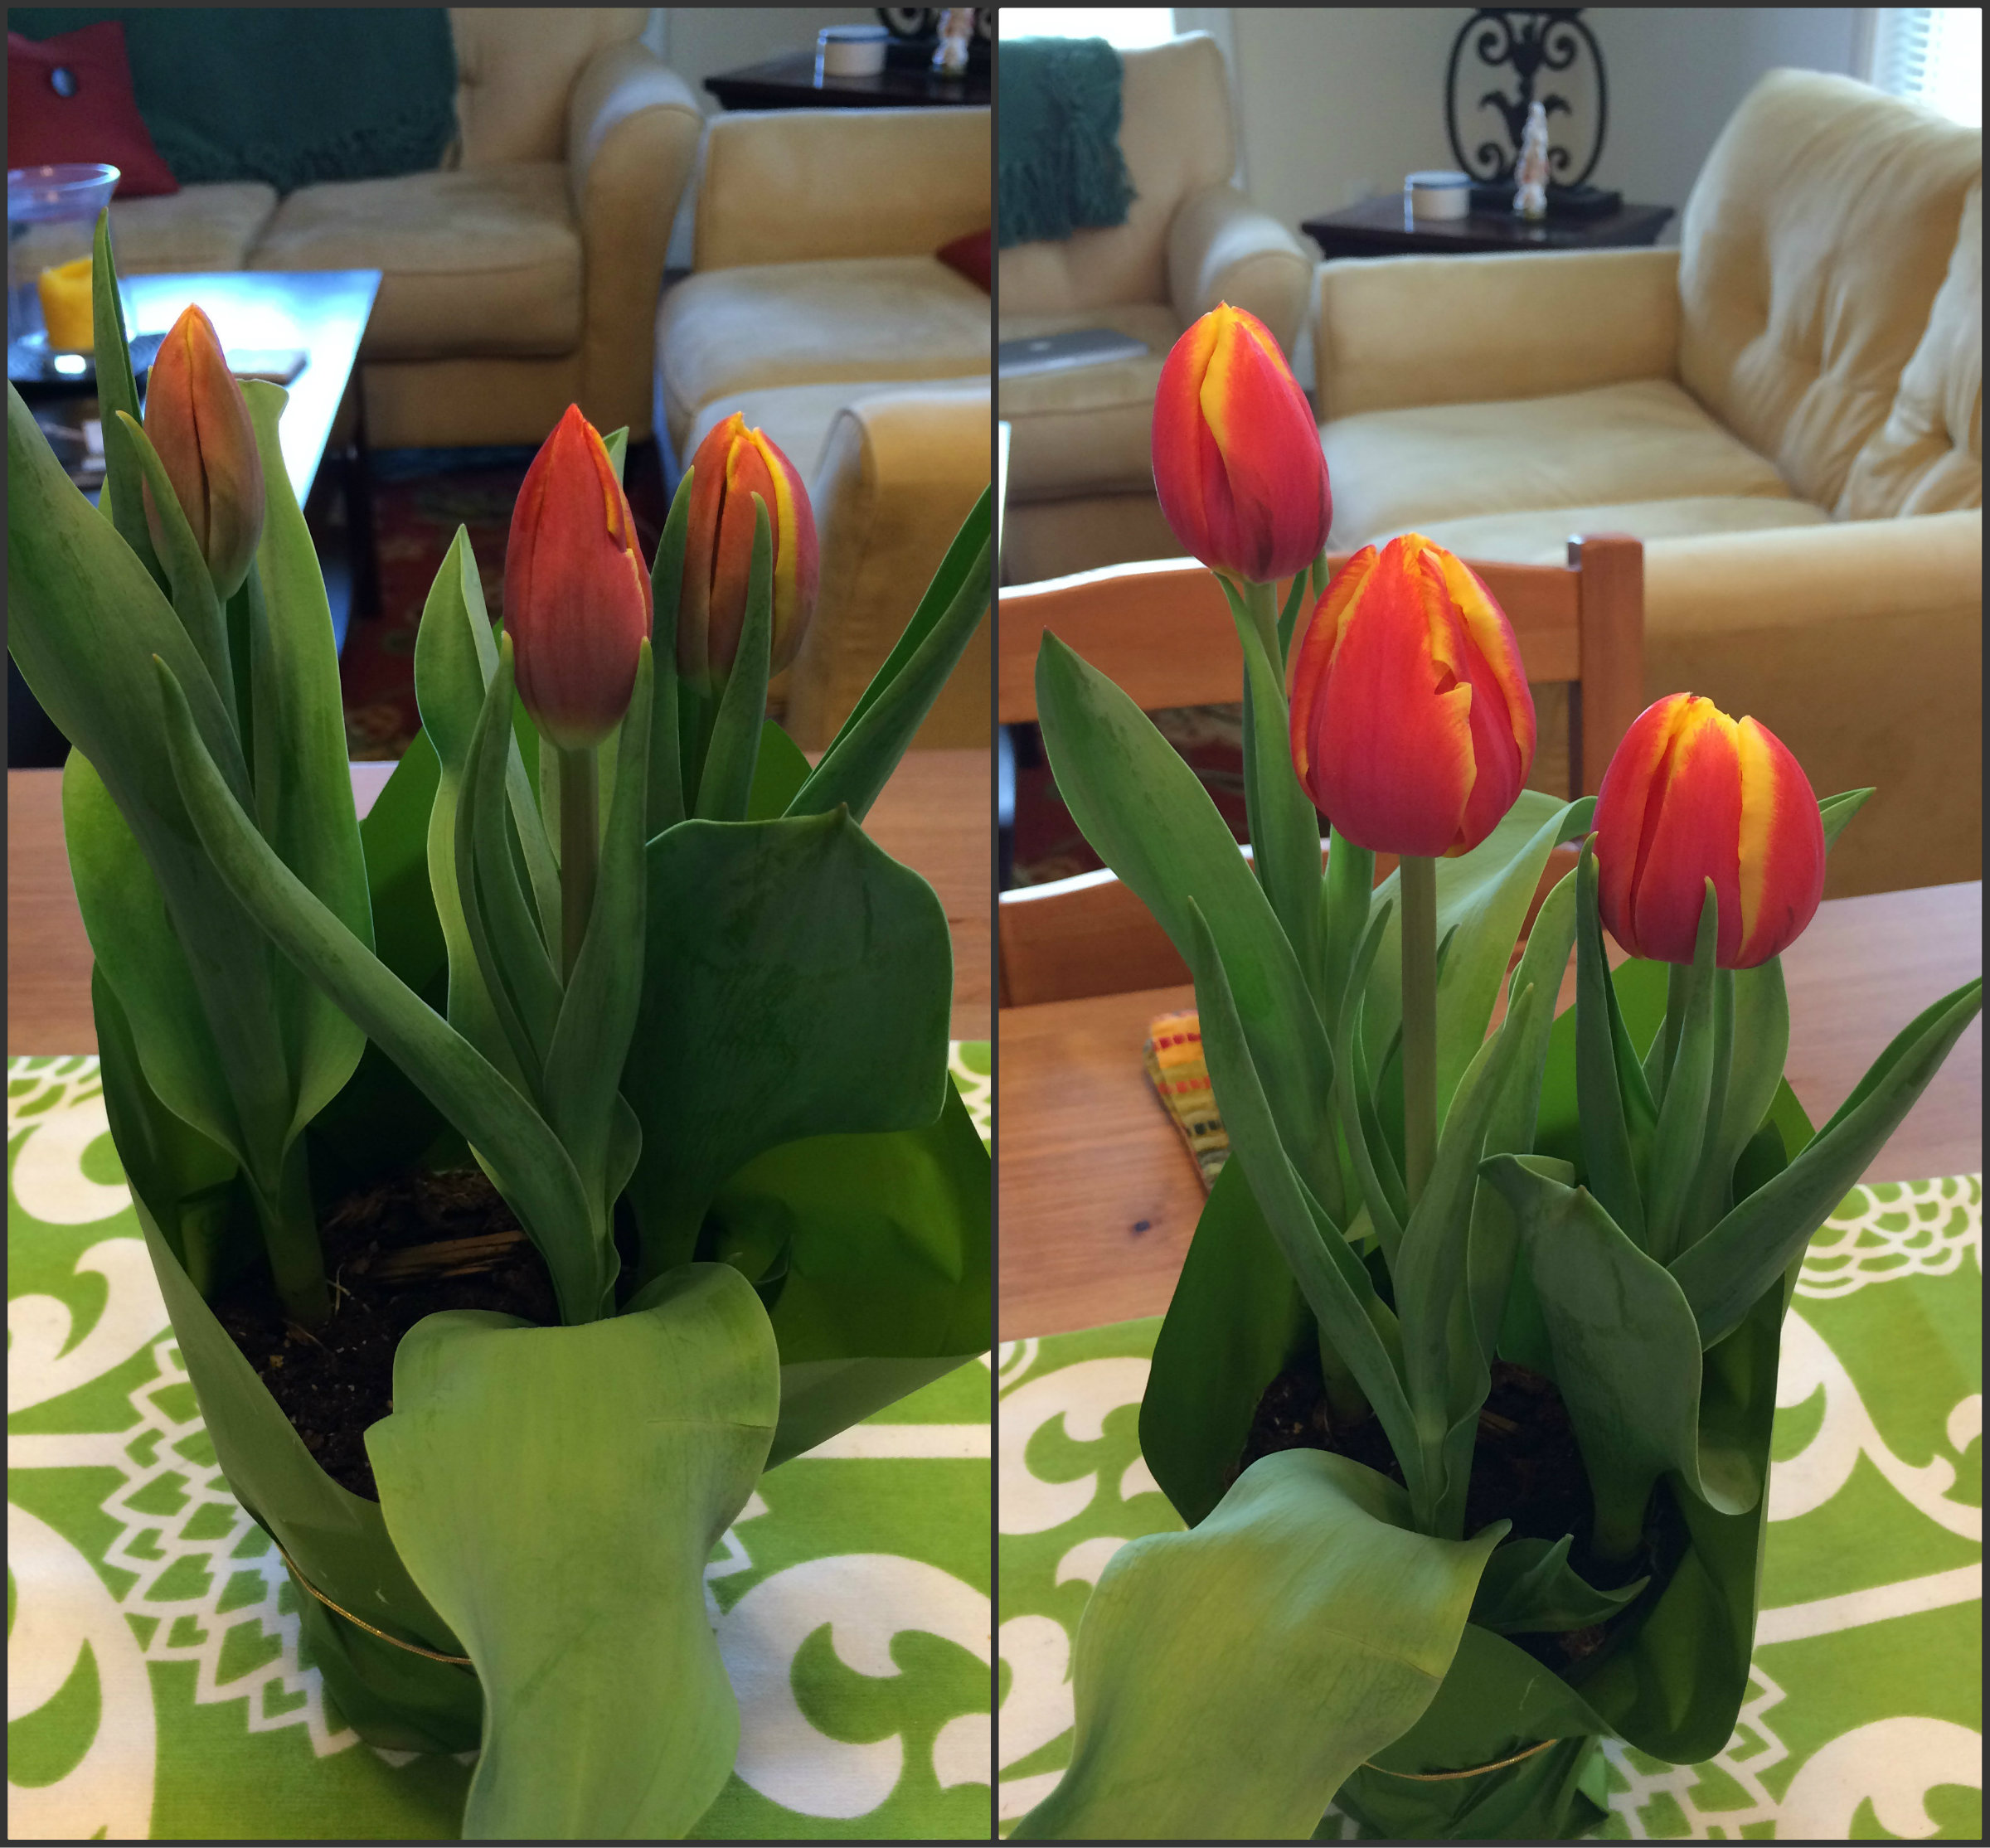 Growing tulips